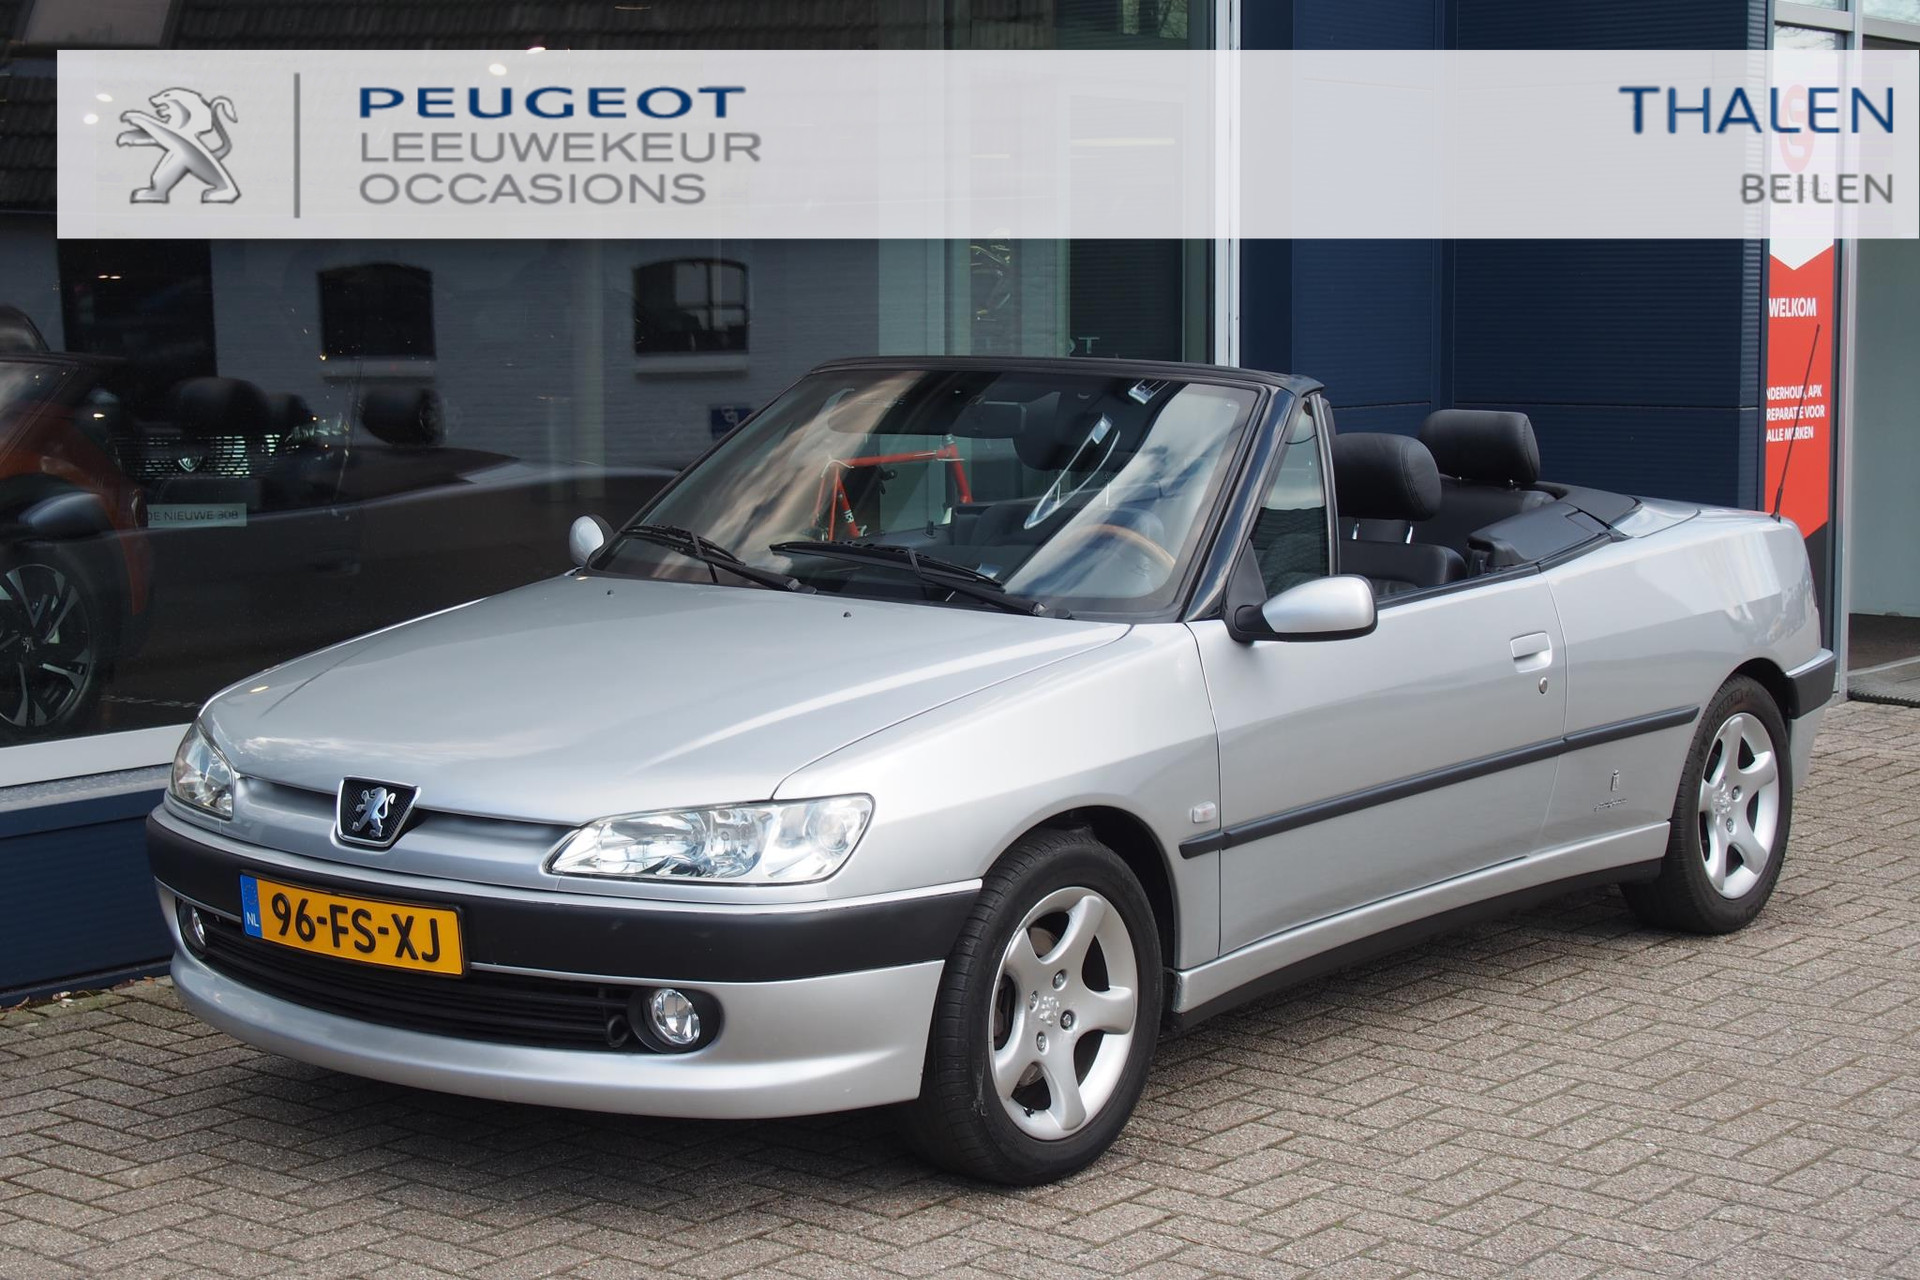 Peugeot 306 1.6 CABRIOLET AUT UIT PRIVECOLLECTIE! KEURIGE 306 CABRIO AUTOMAAT VAN 1E EIGENAAR MET SLECHTS 71.000 KM! bij viaBOVAG.nl